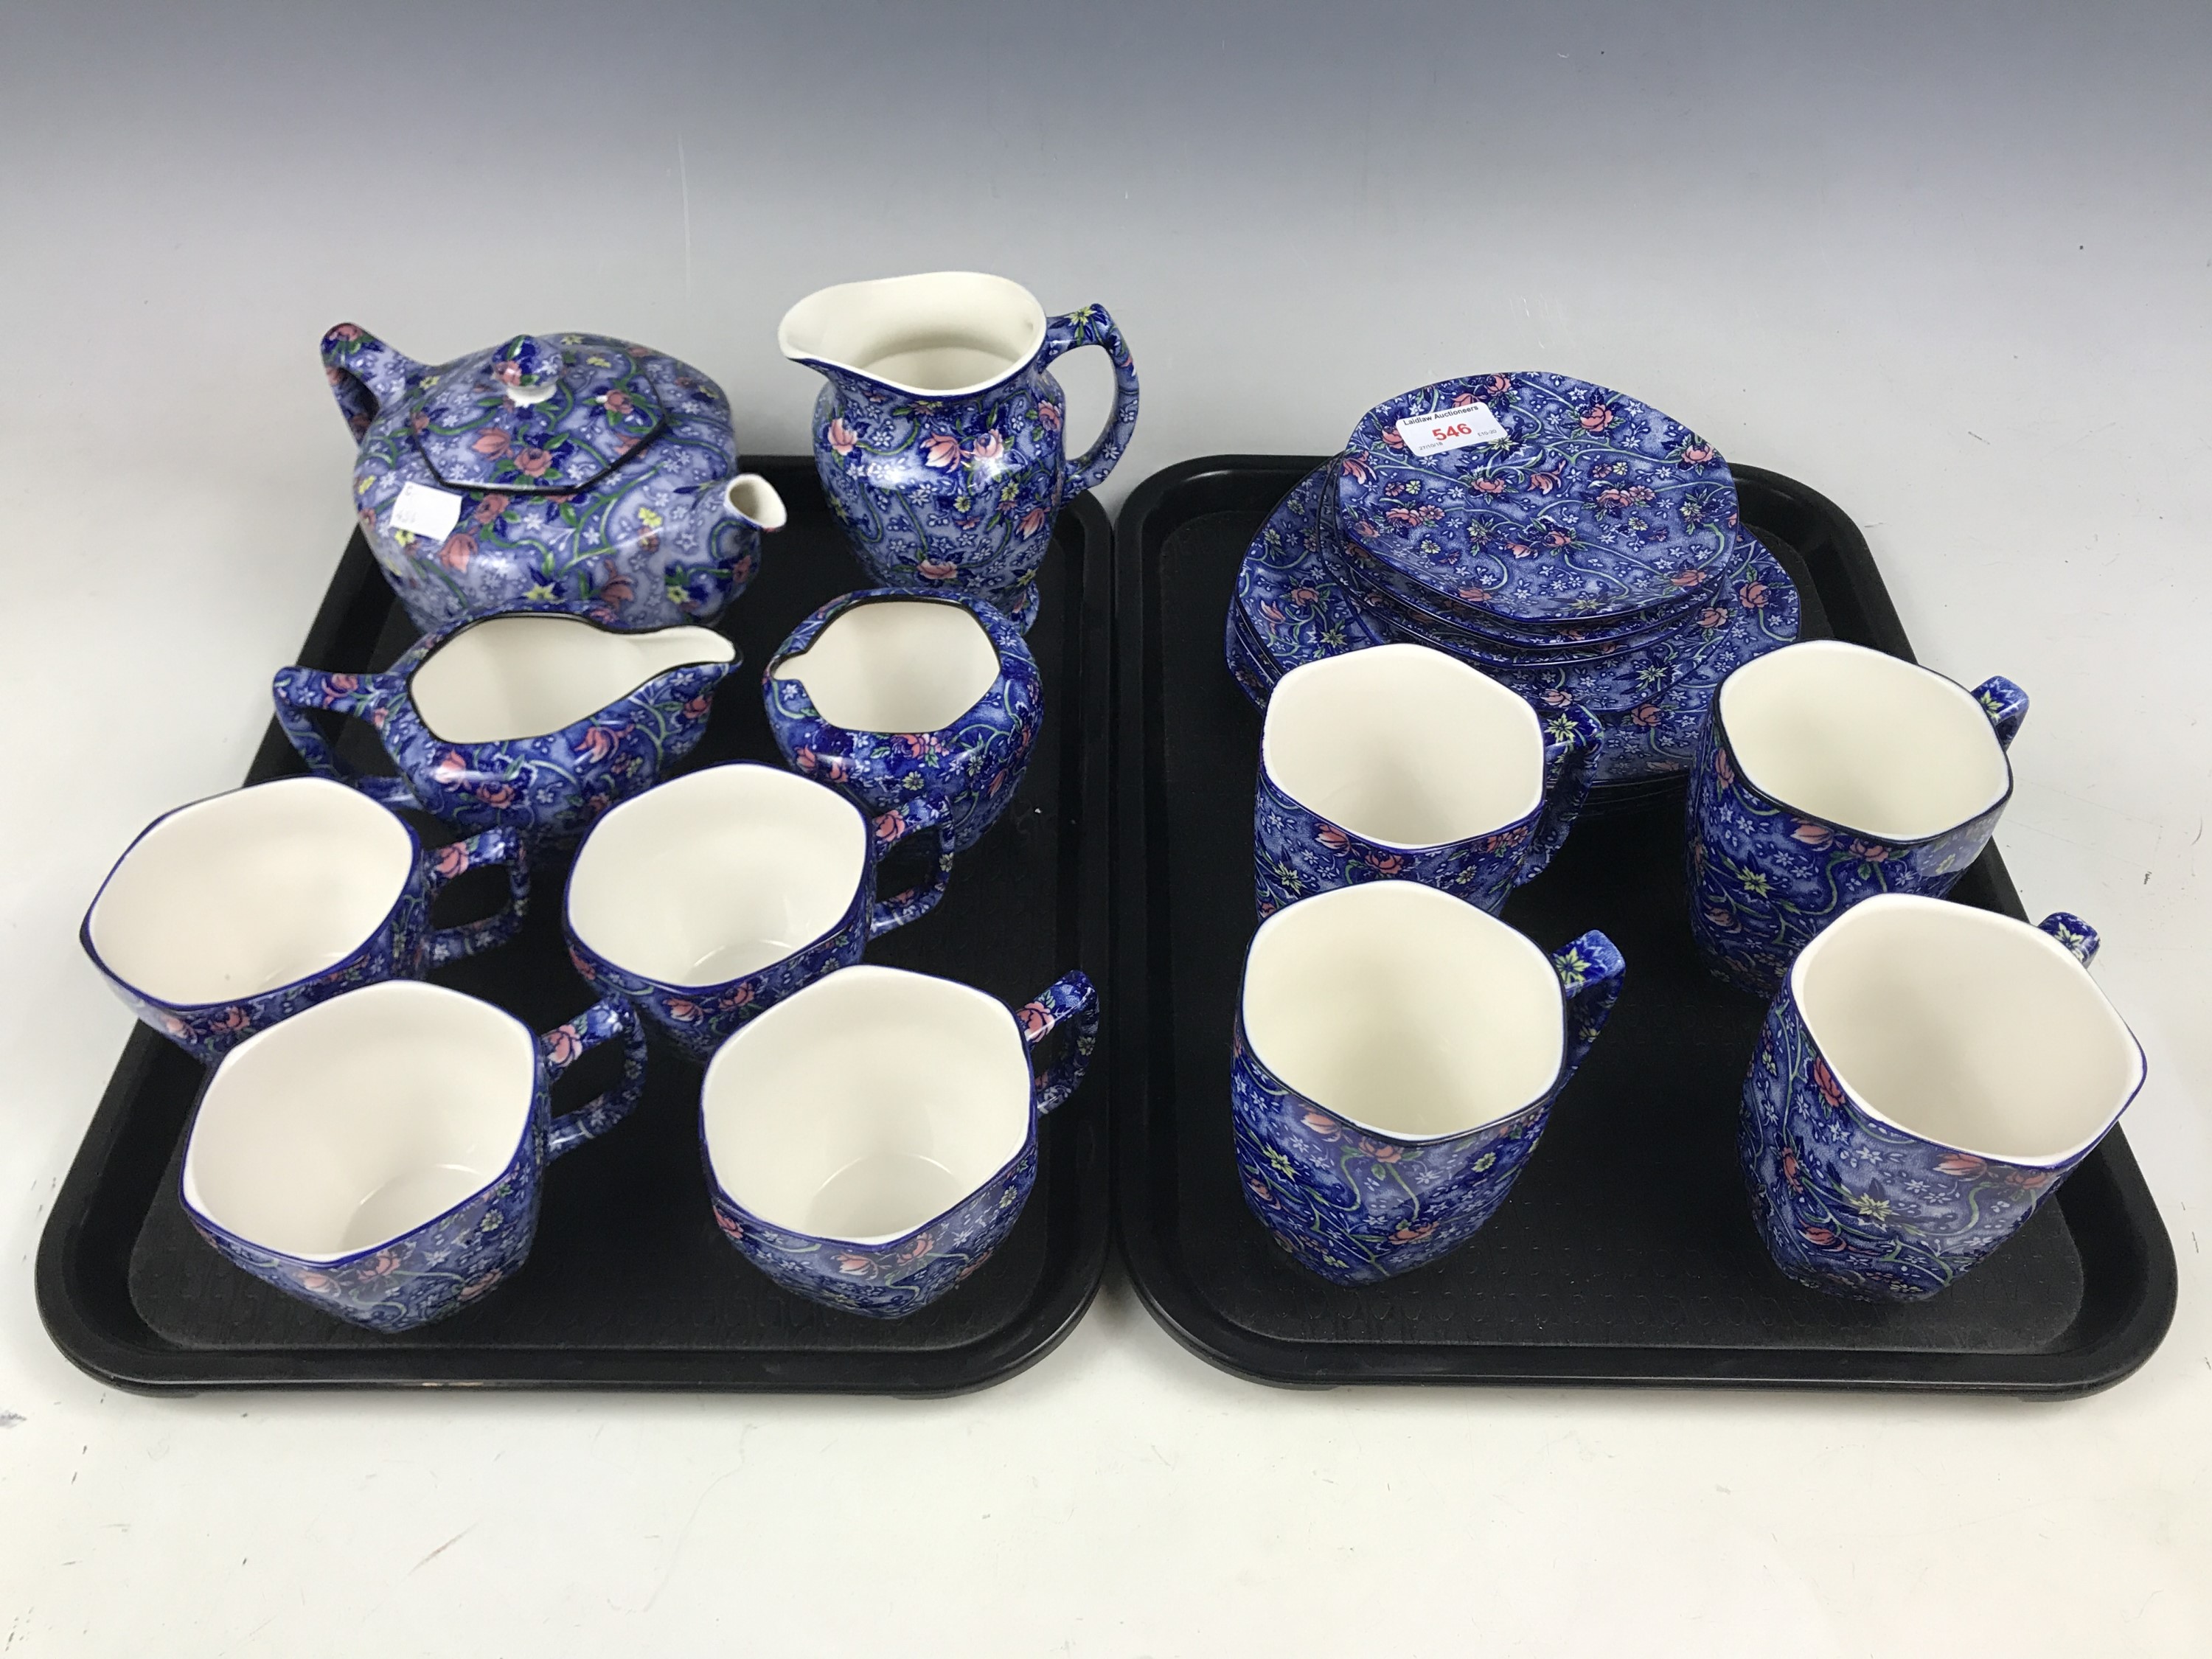 A Ringtons chintz pattern tea set